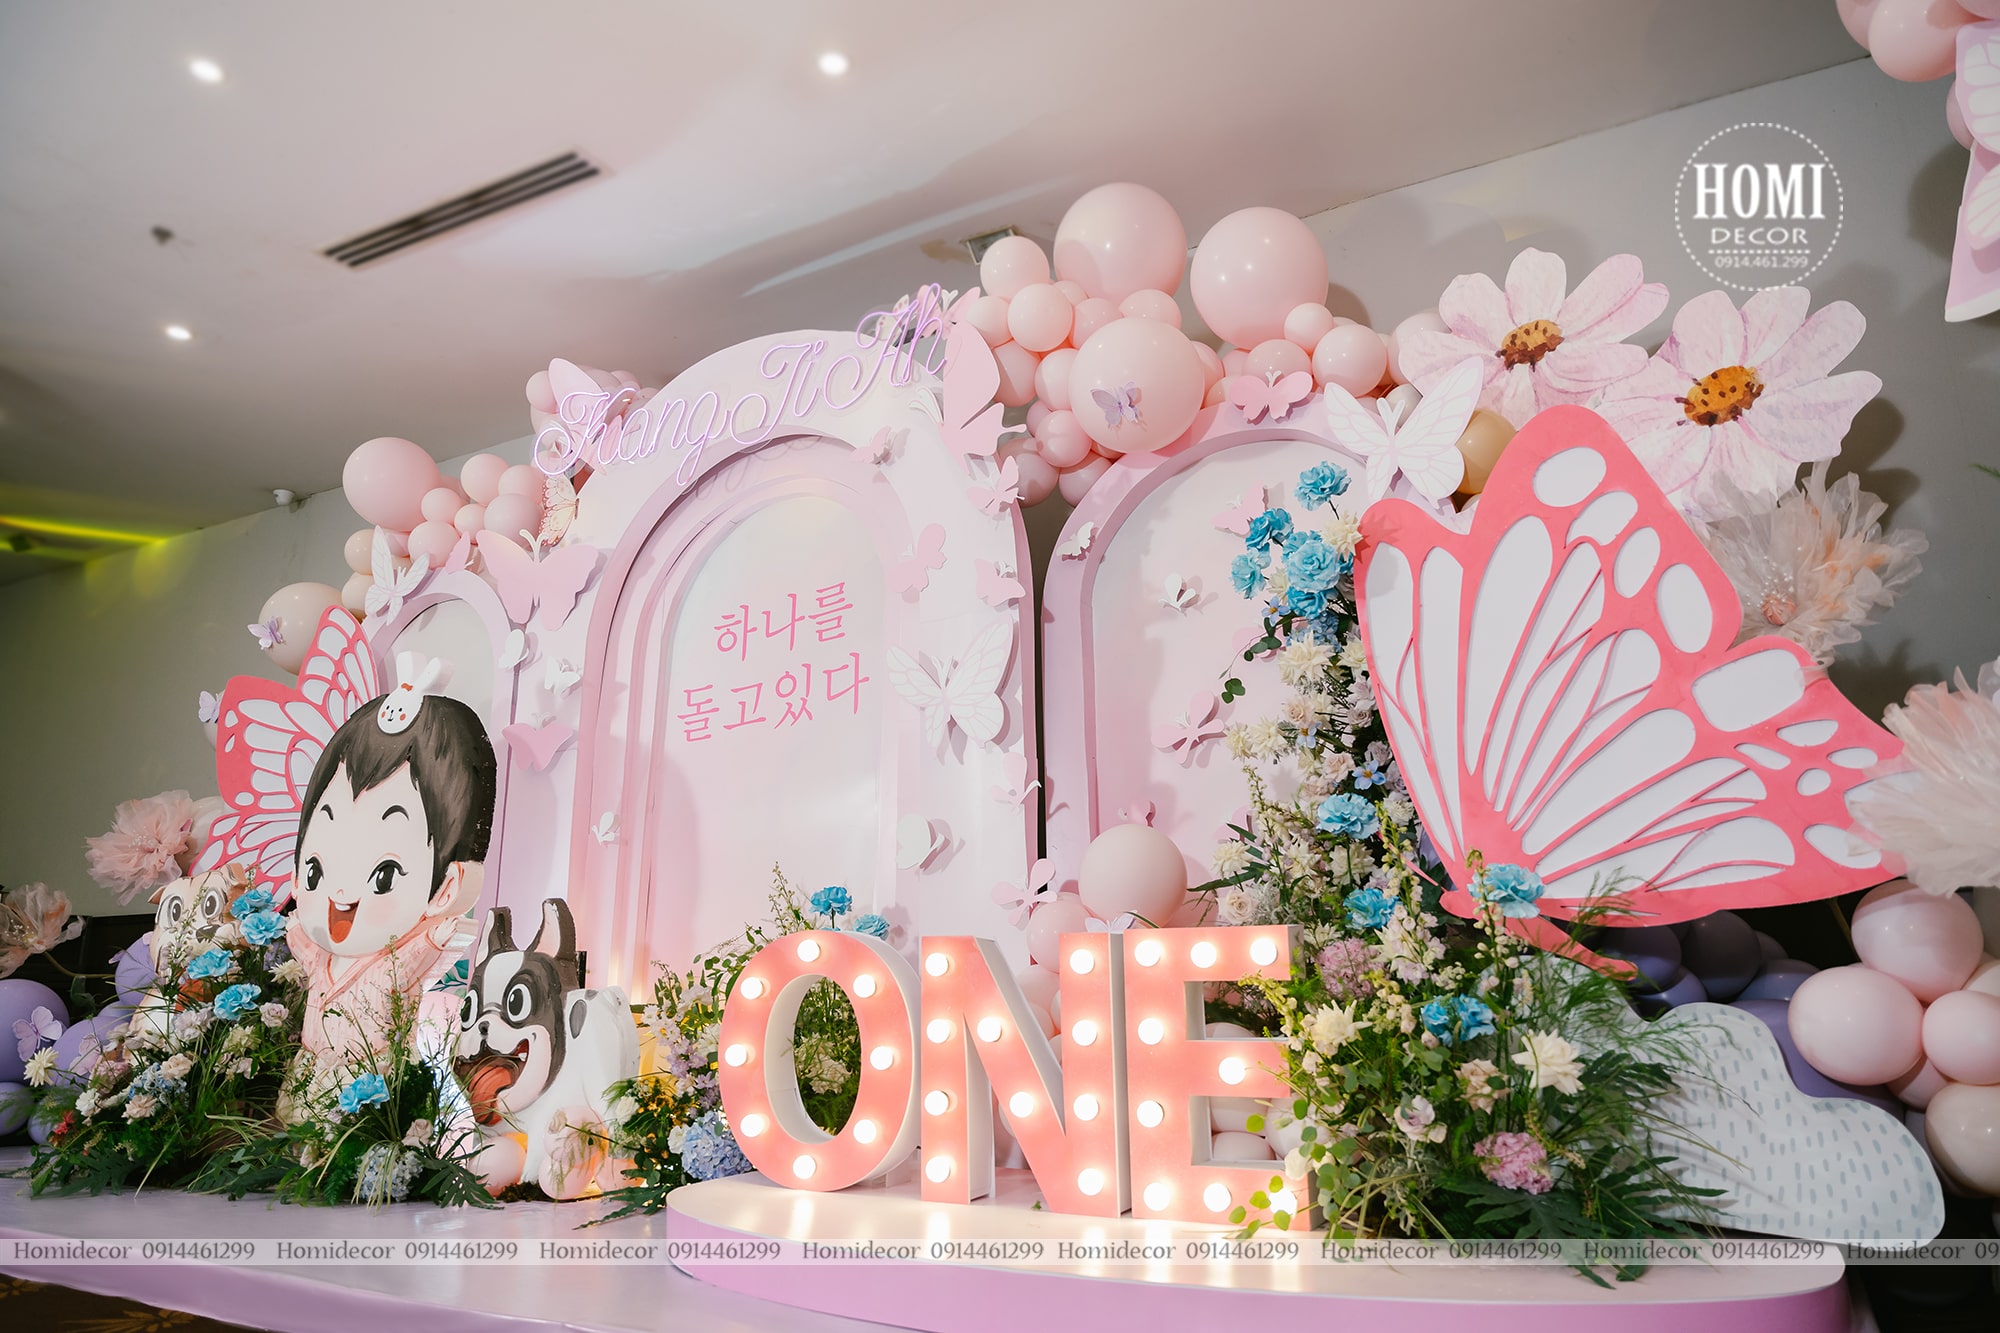 Trang trí sinh nhật bé gái chủ đề khu vườn bươm bướm với tông màu Hàn Quốc